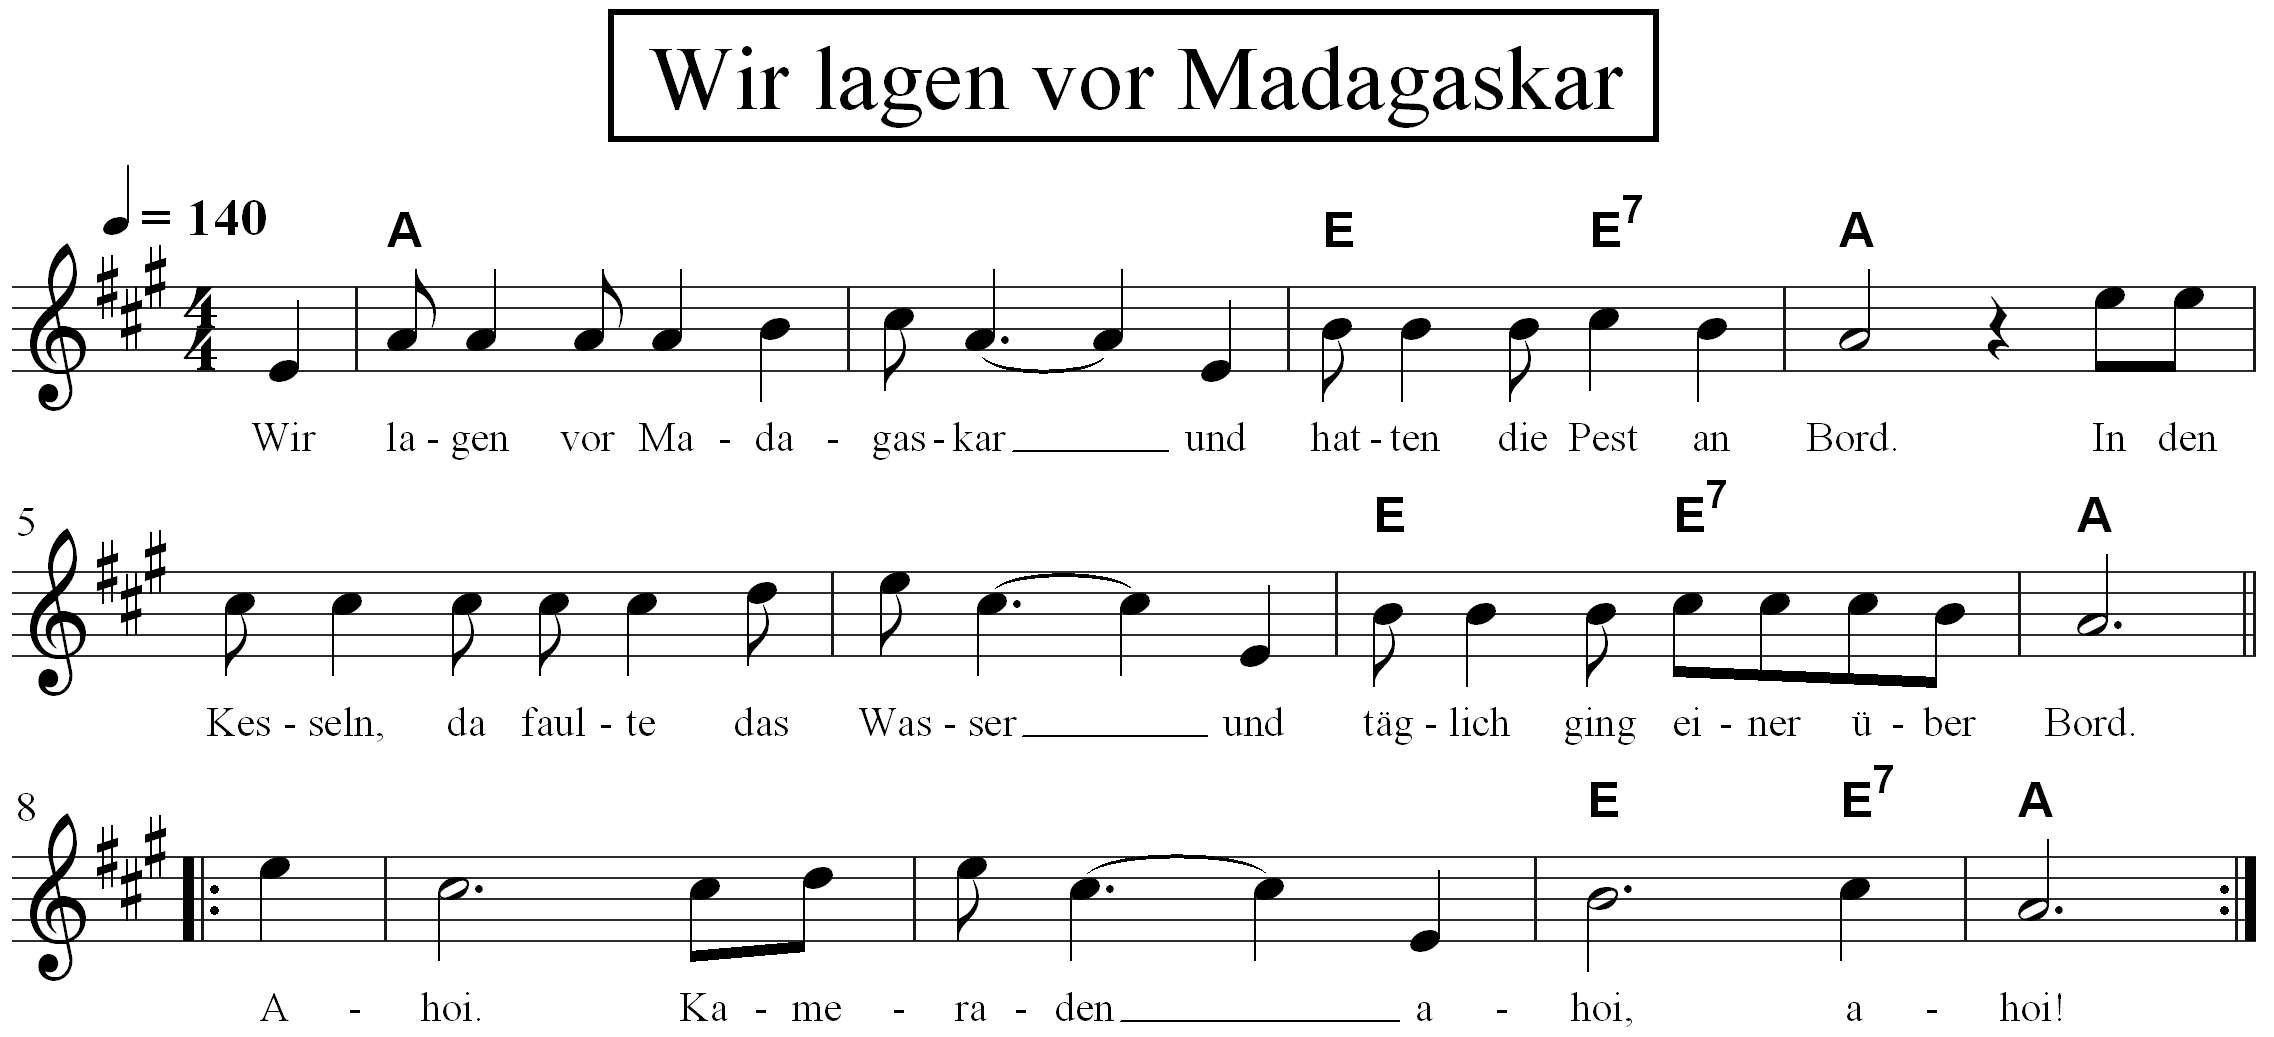 Melodie, Text und Akkorde. 